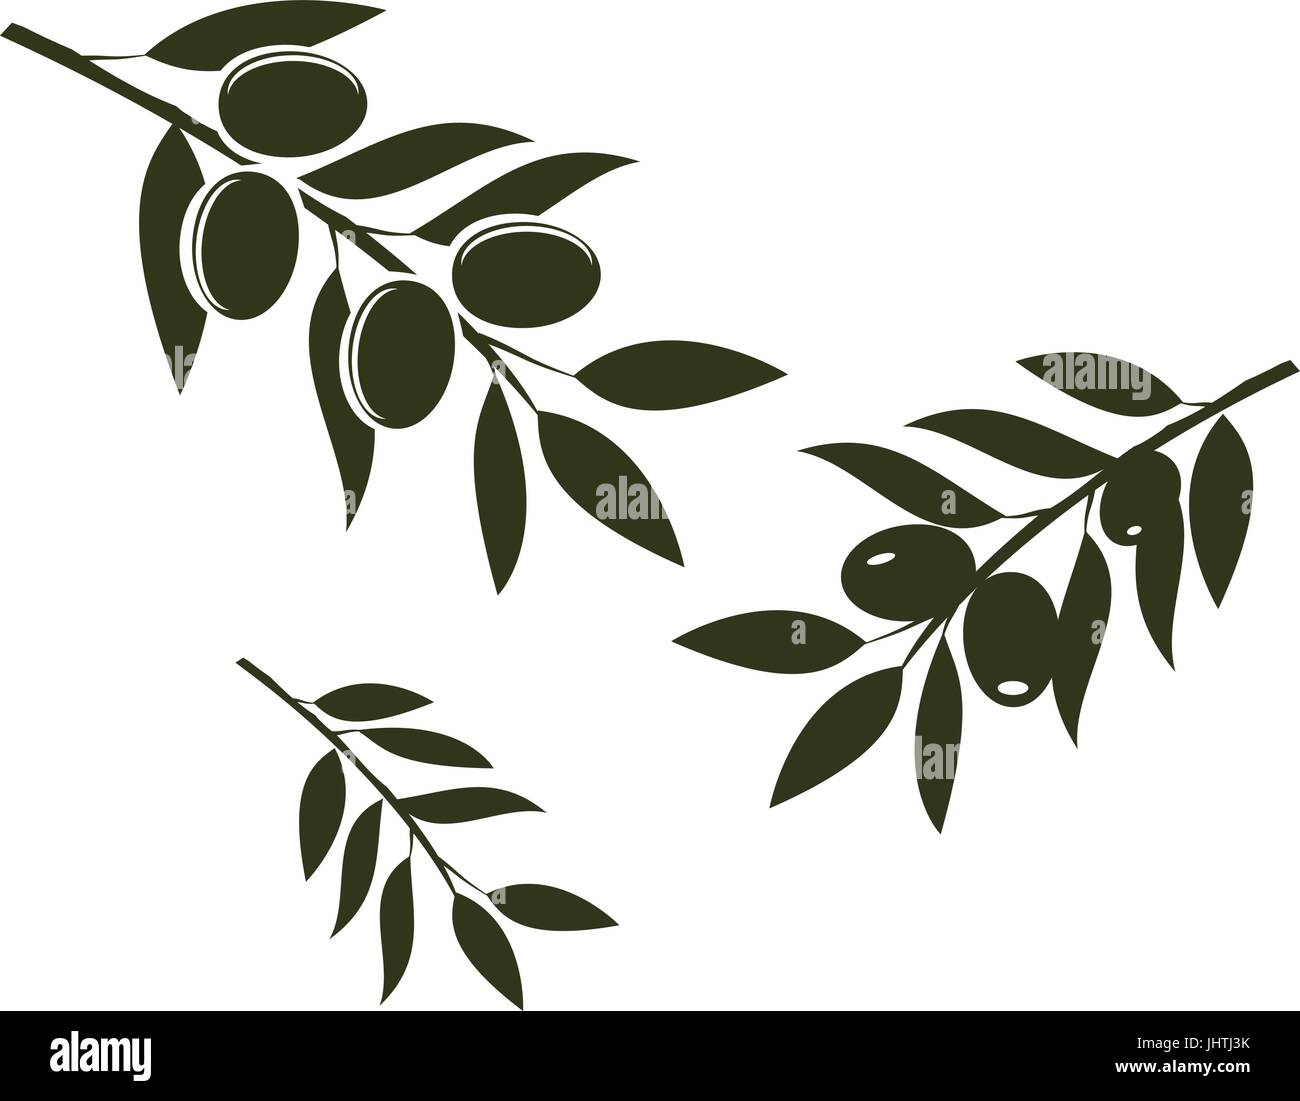 Vektor-Illustration von Olivenzweigen isoliert auf weißem Hintergrund Stock Vektor